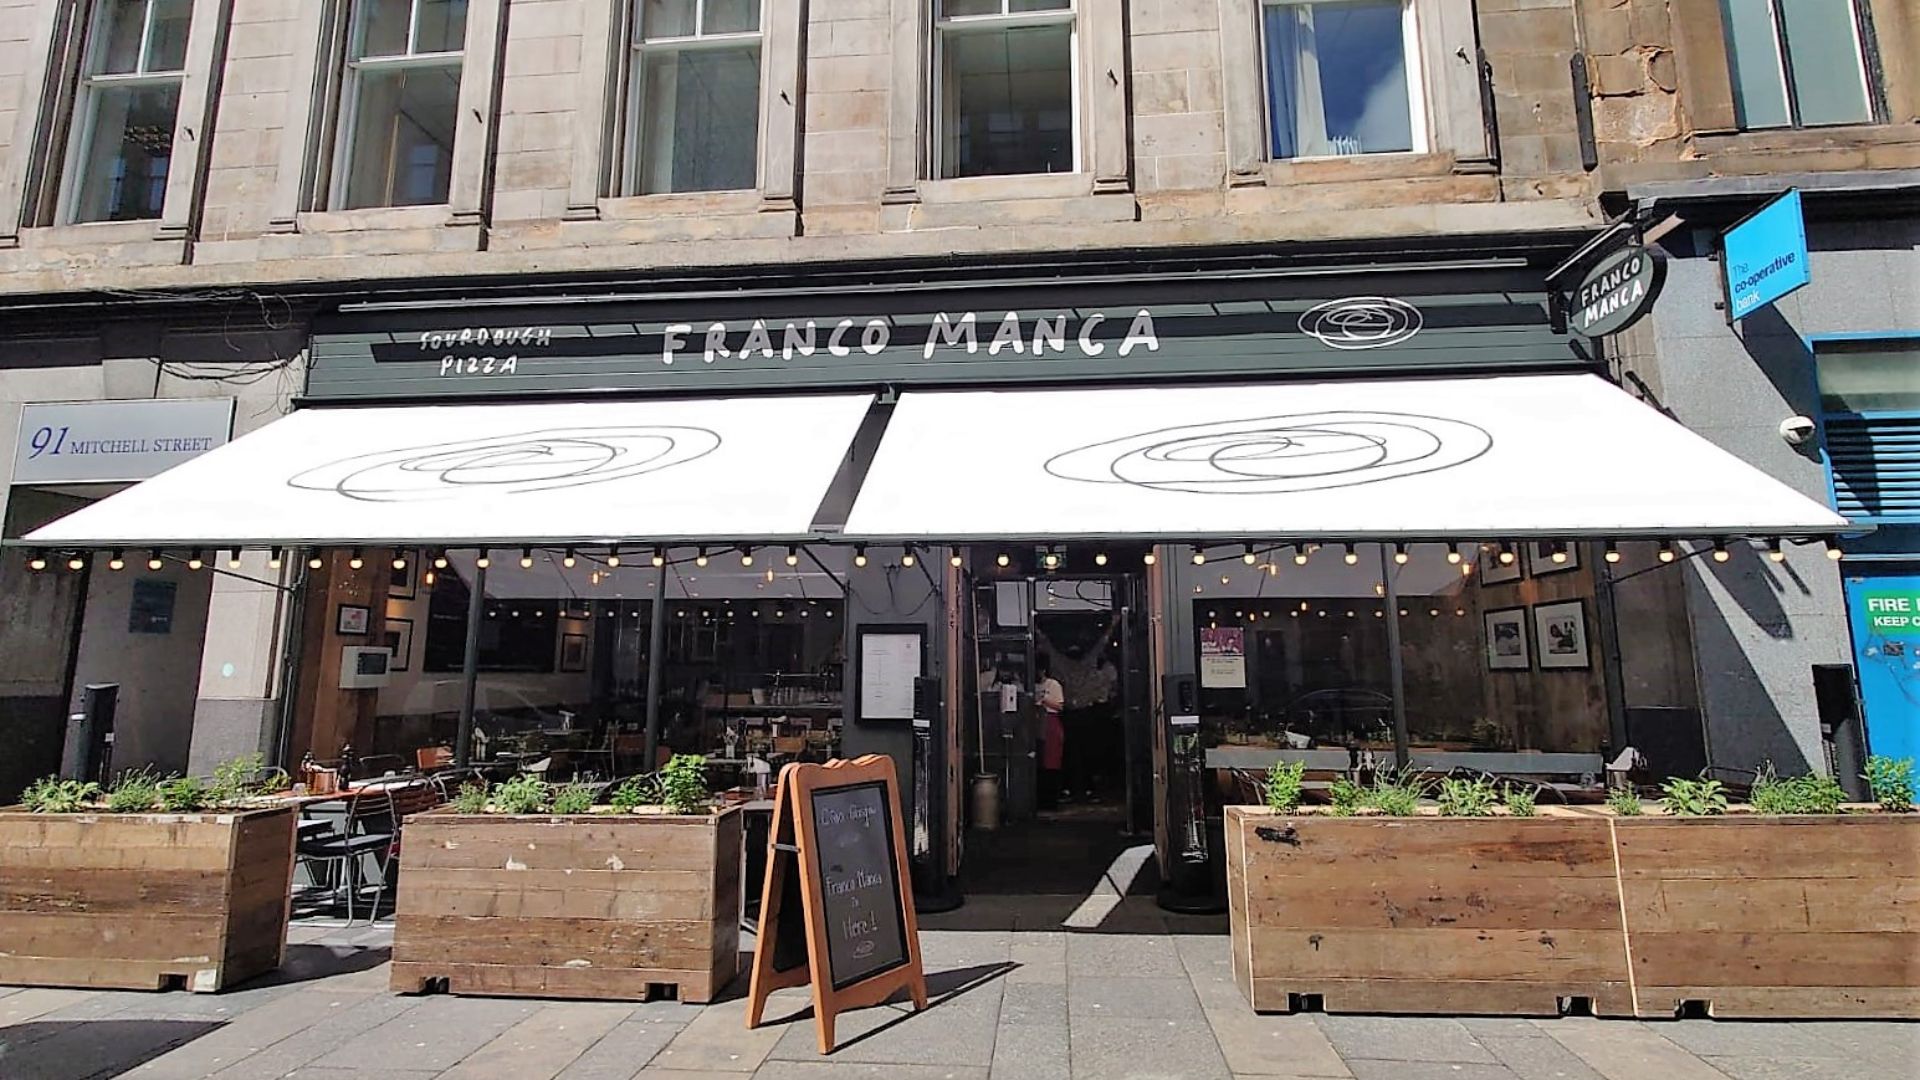 Glasgow Franco Manca exterior